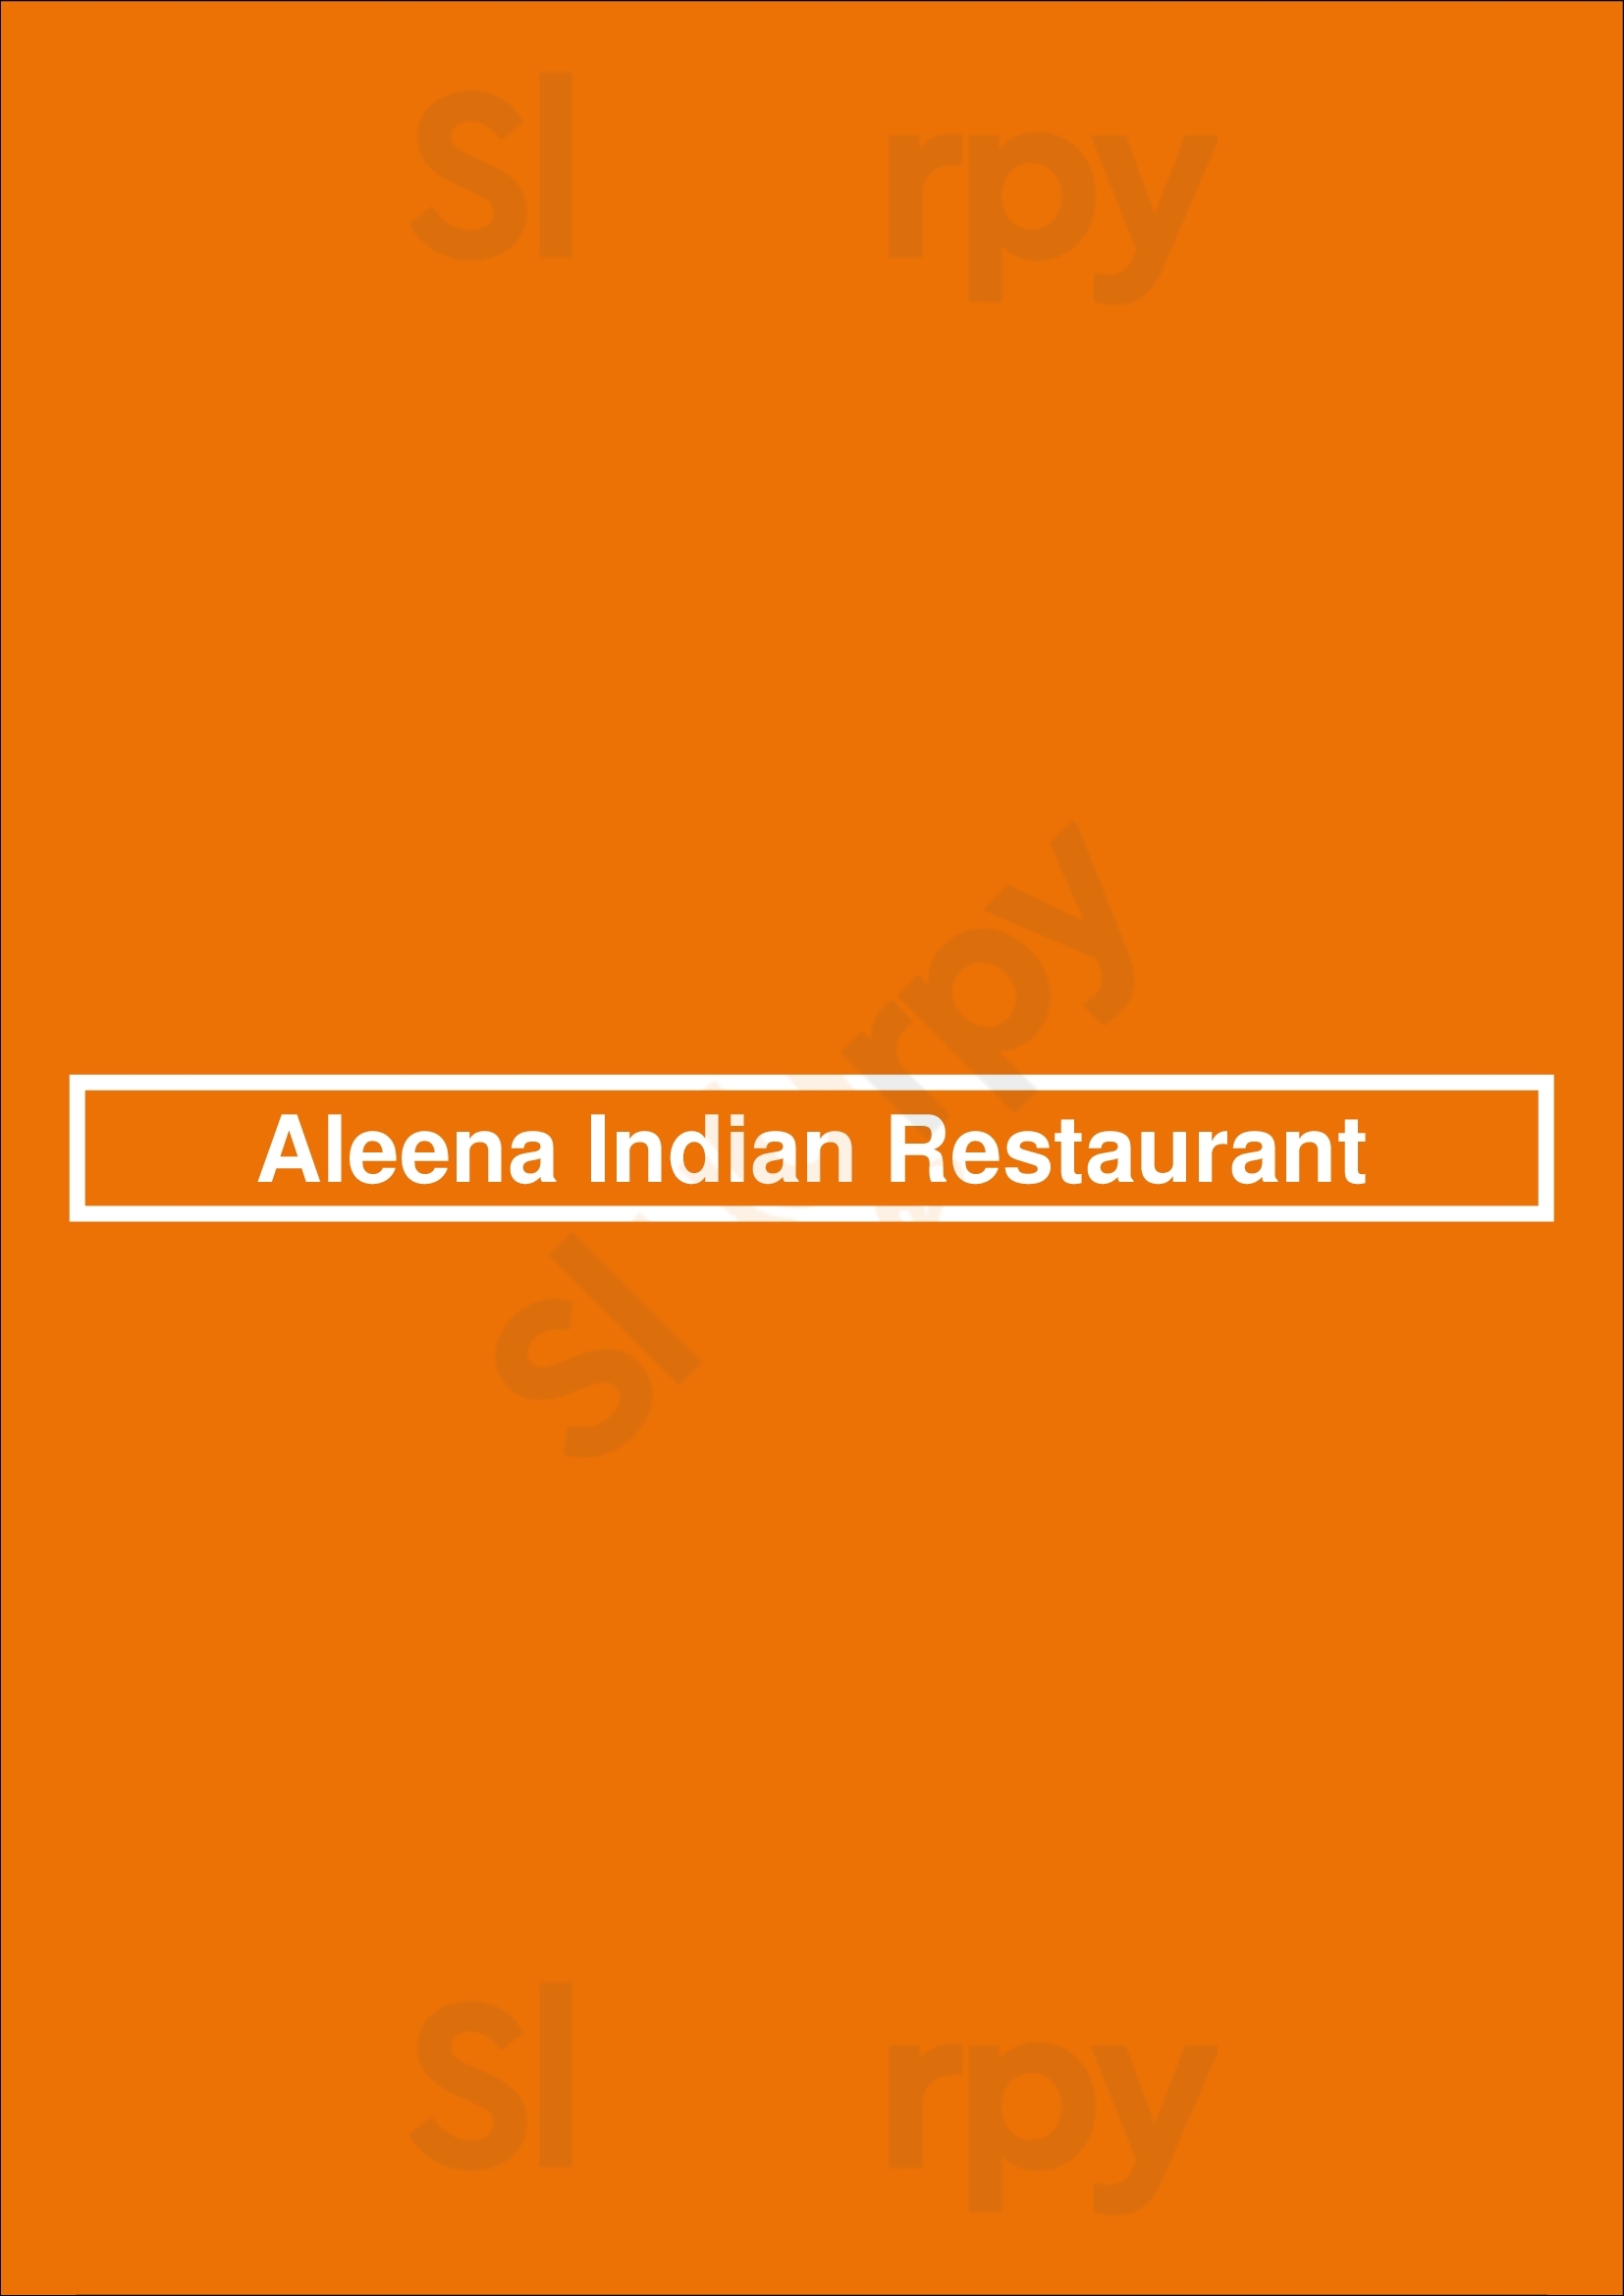 Aleena Indian Restaurant Dublin Menu - 1